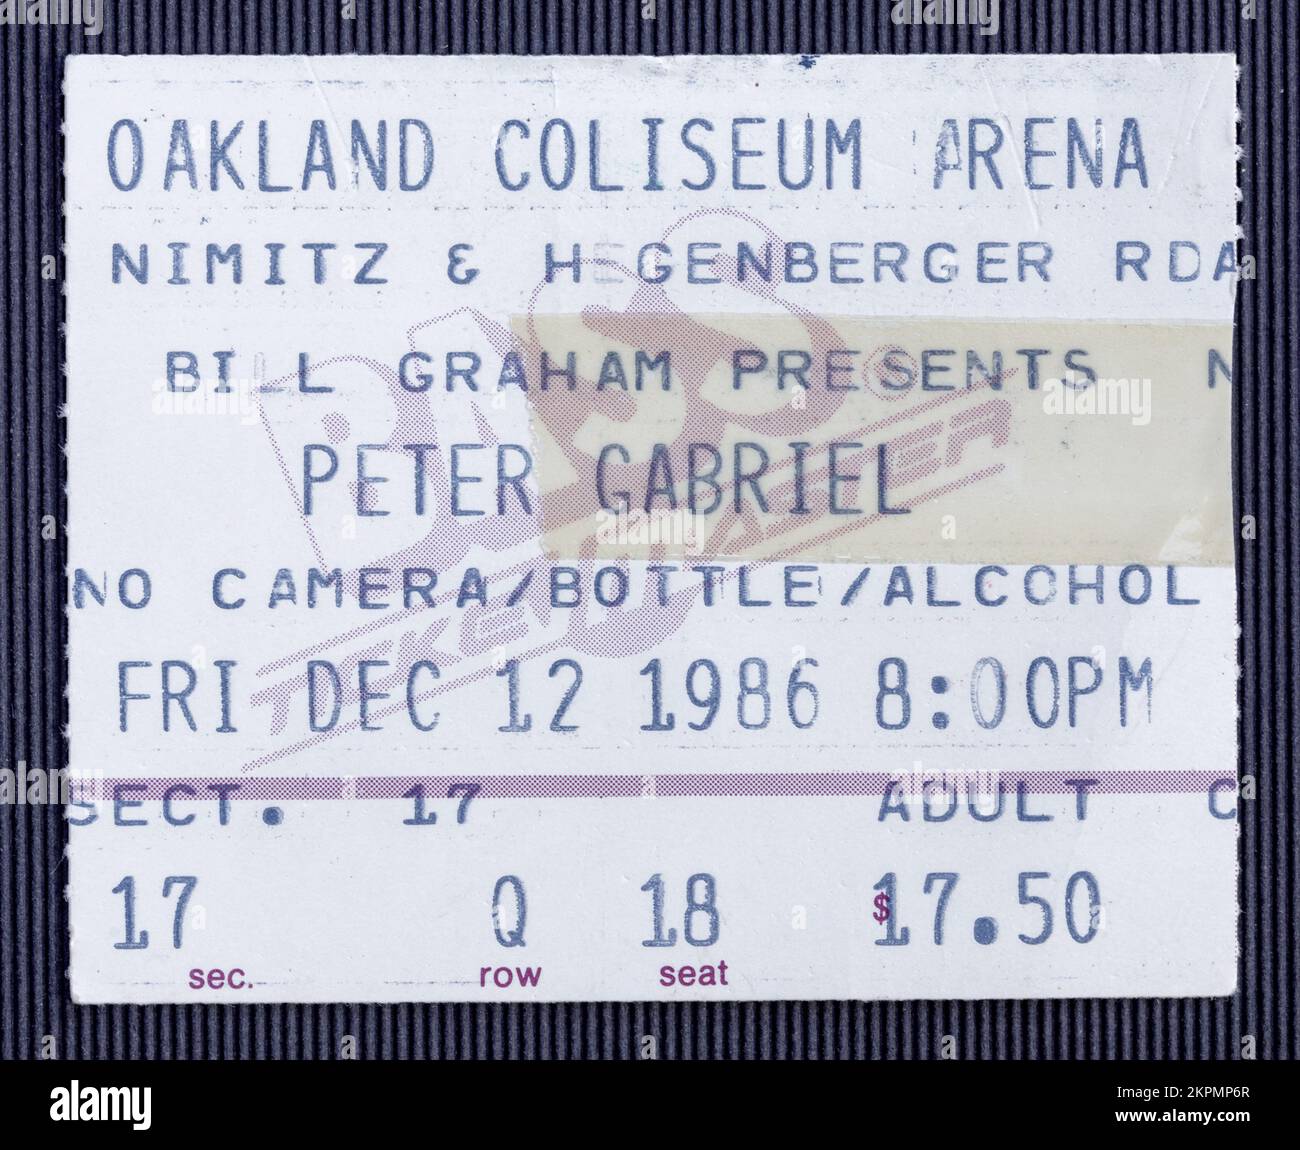 Oakland, California - 12 dicembre 1986 - biglietto stub per Peter Gabriel in SO album tour all'Oakland Coliseum Arena Foto Stock